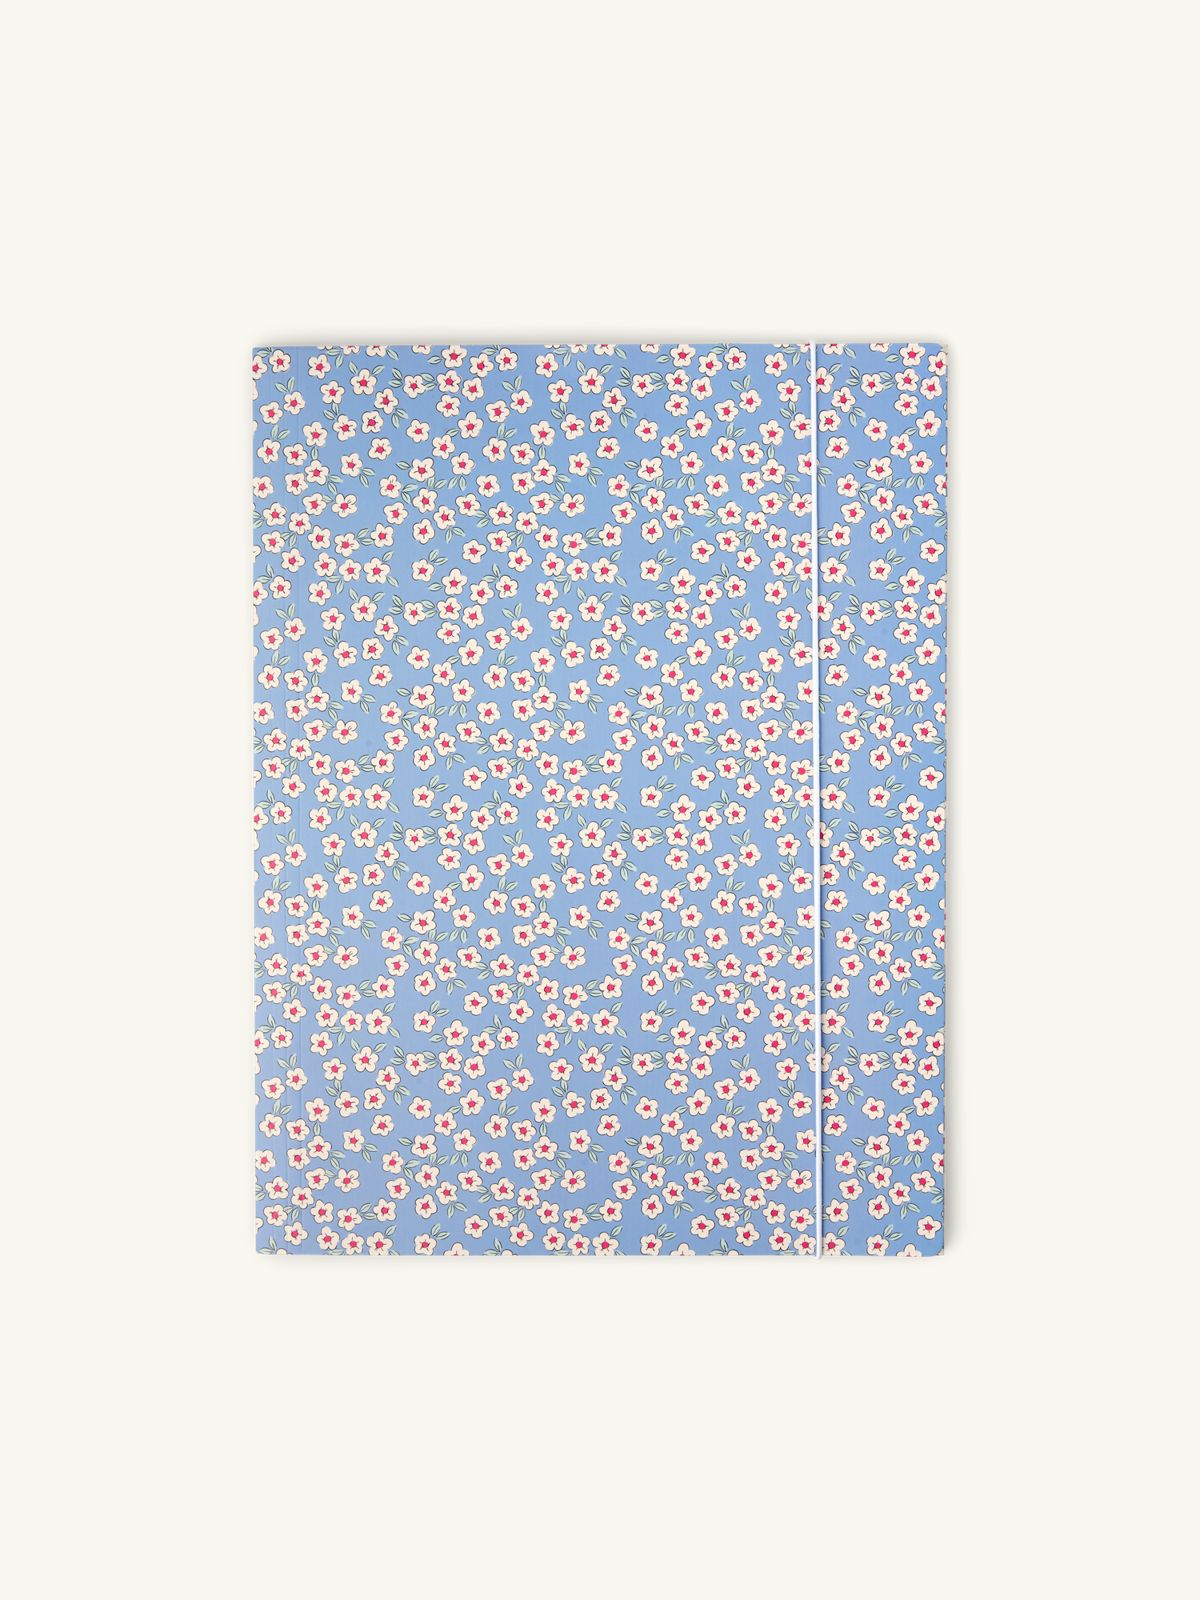 Chemise à élastique | Carton. 32 x 24 cm. | Søstrene Grene